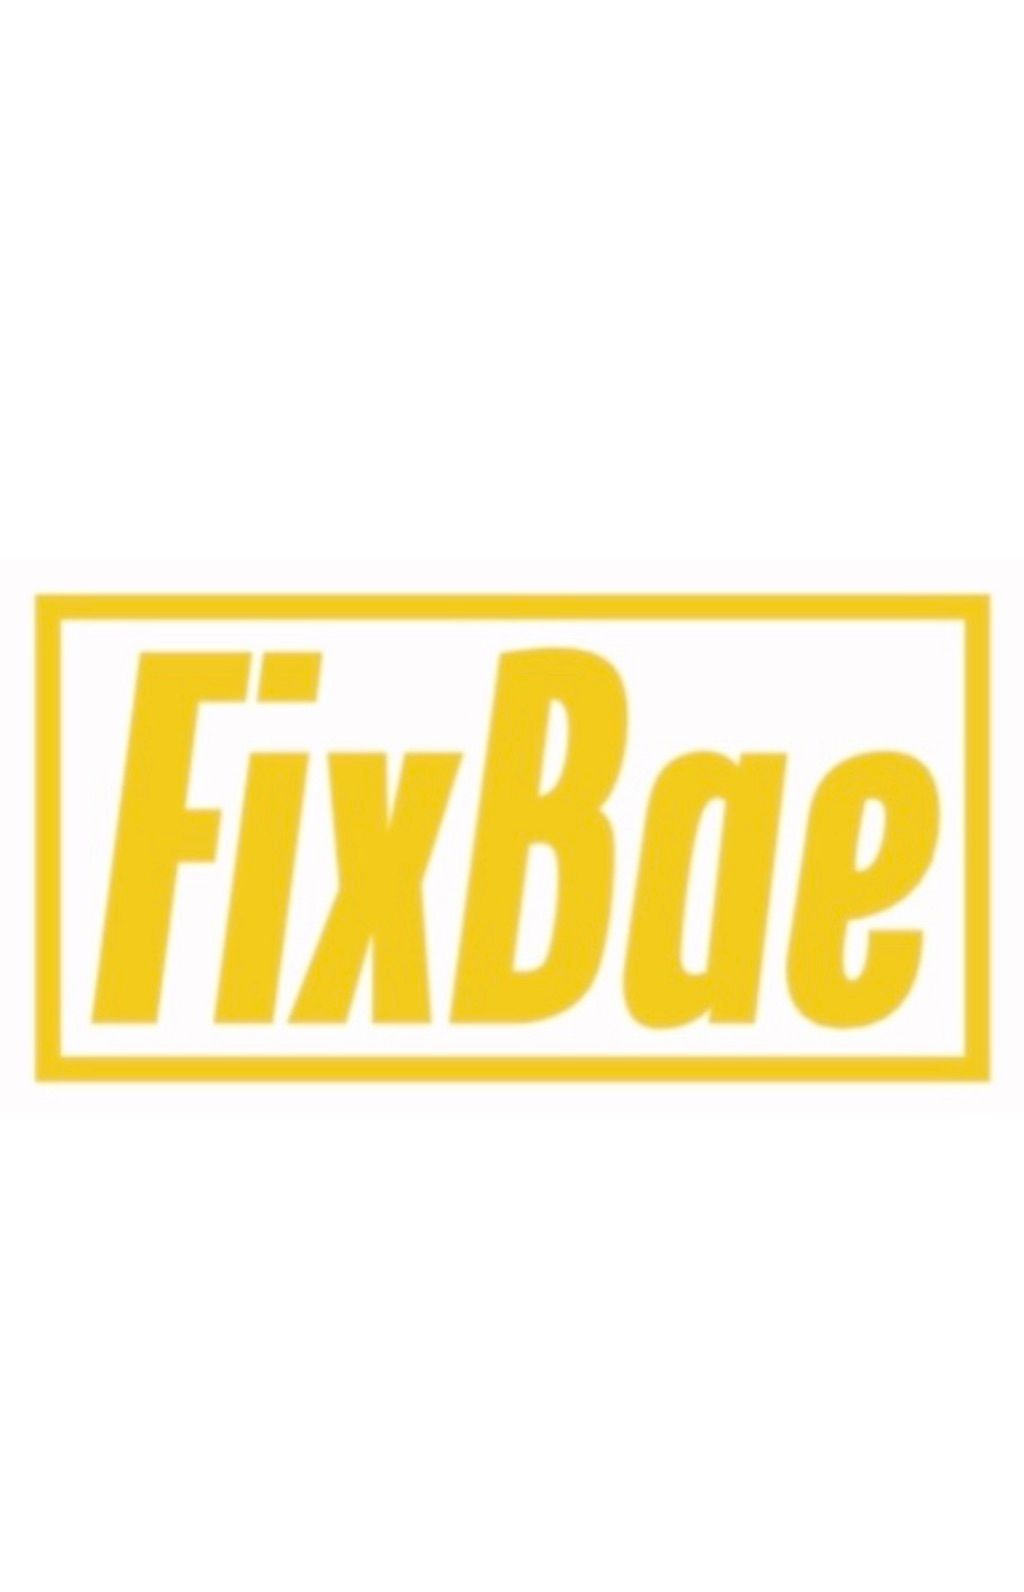 FixBae LLC